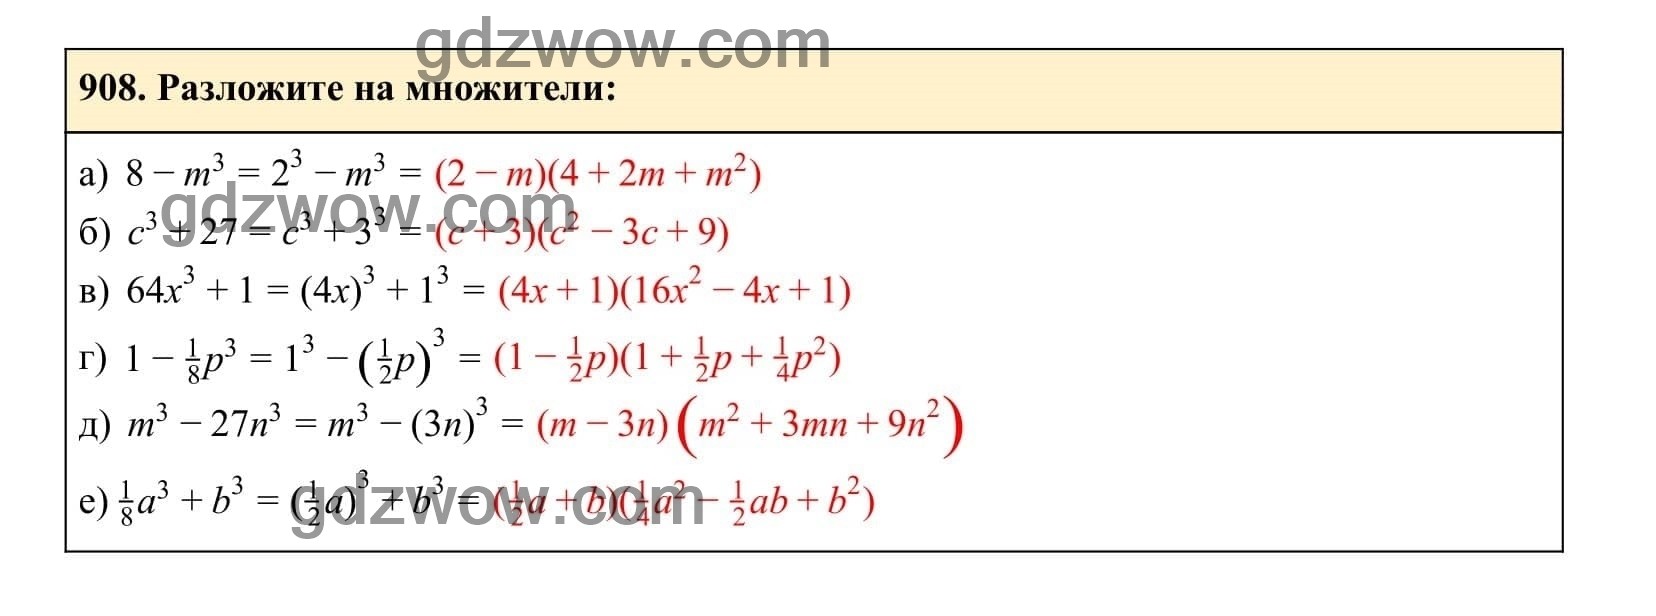 Упражнение 908 - ГДЗ по Алгебре 7 класс Учебник Макарычев (решебник) - GDZwow